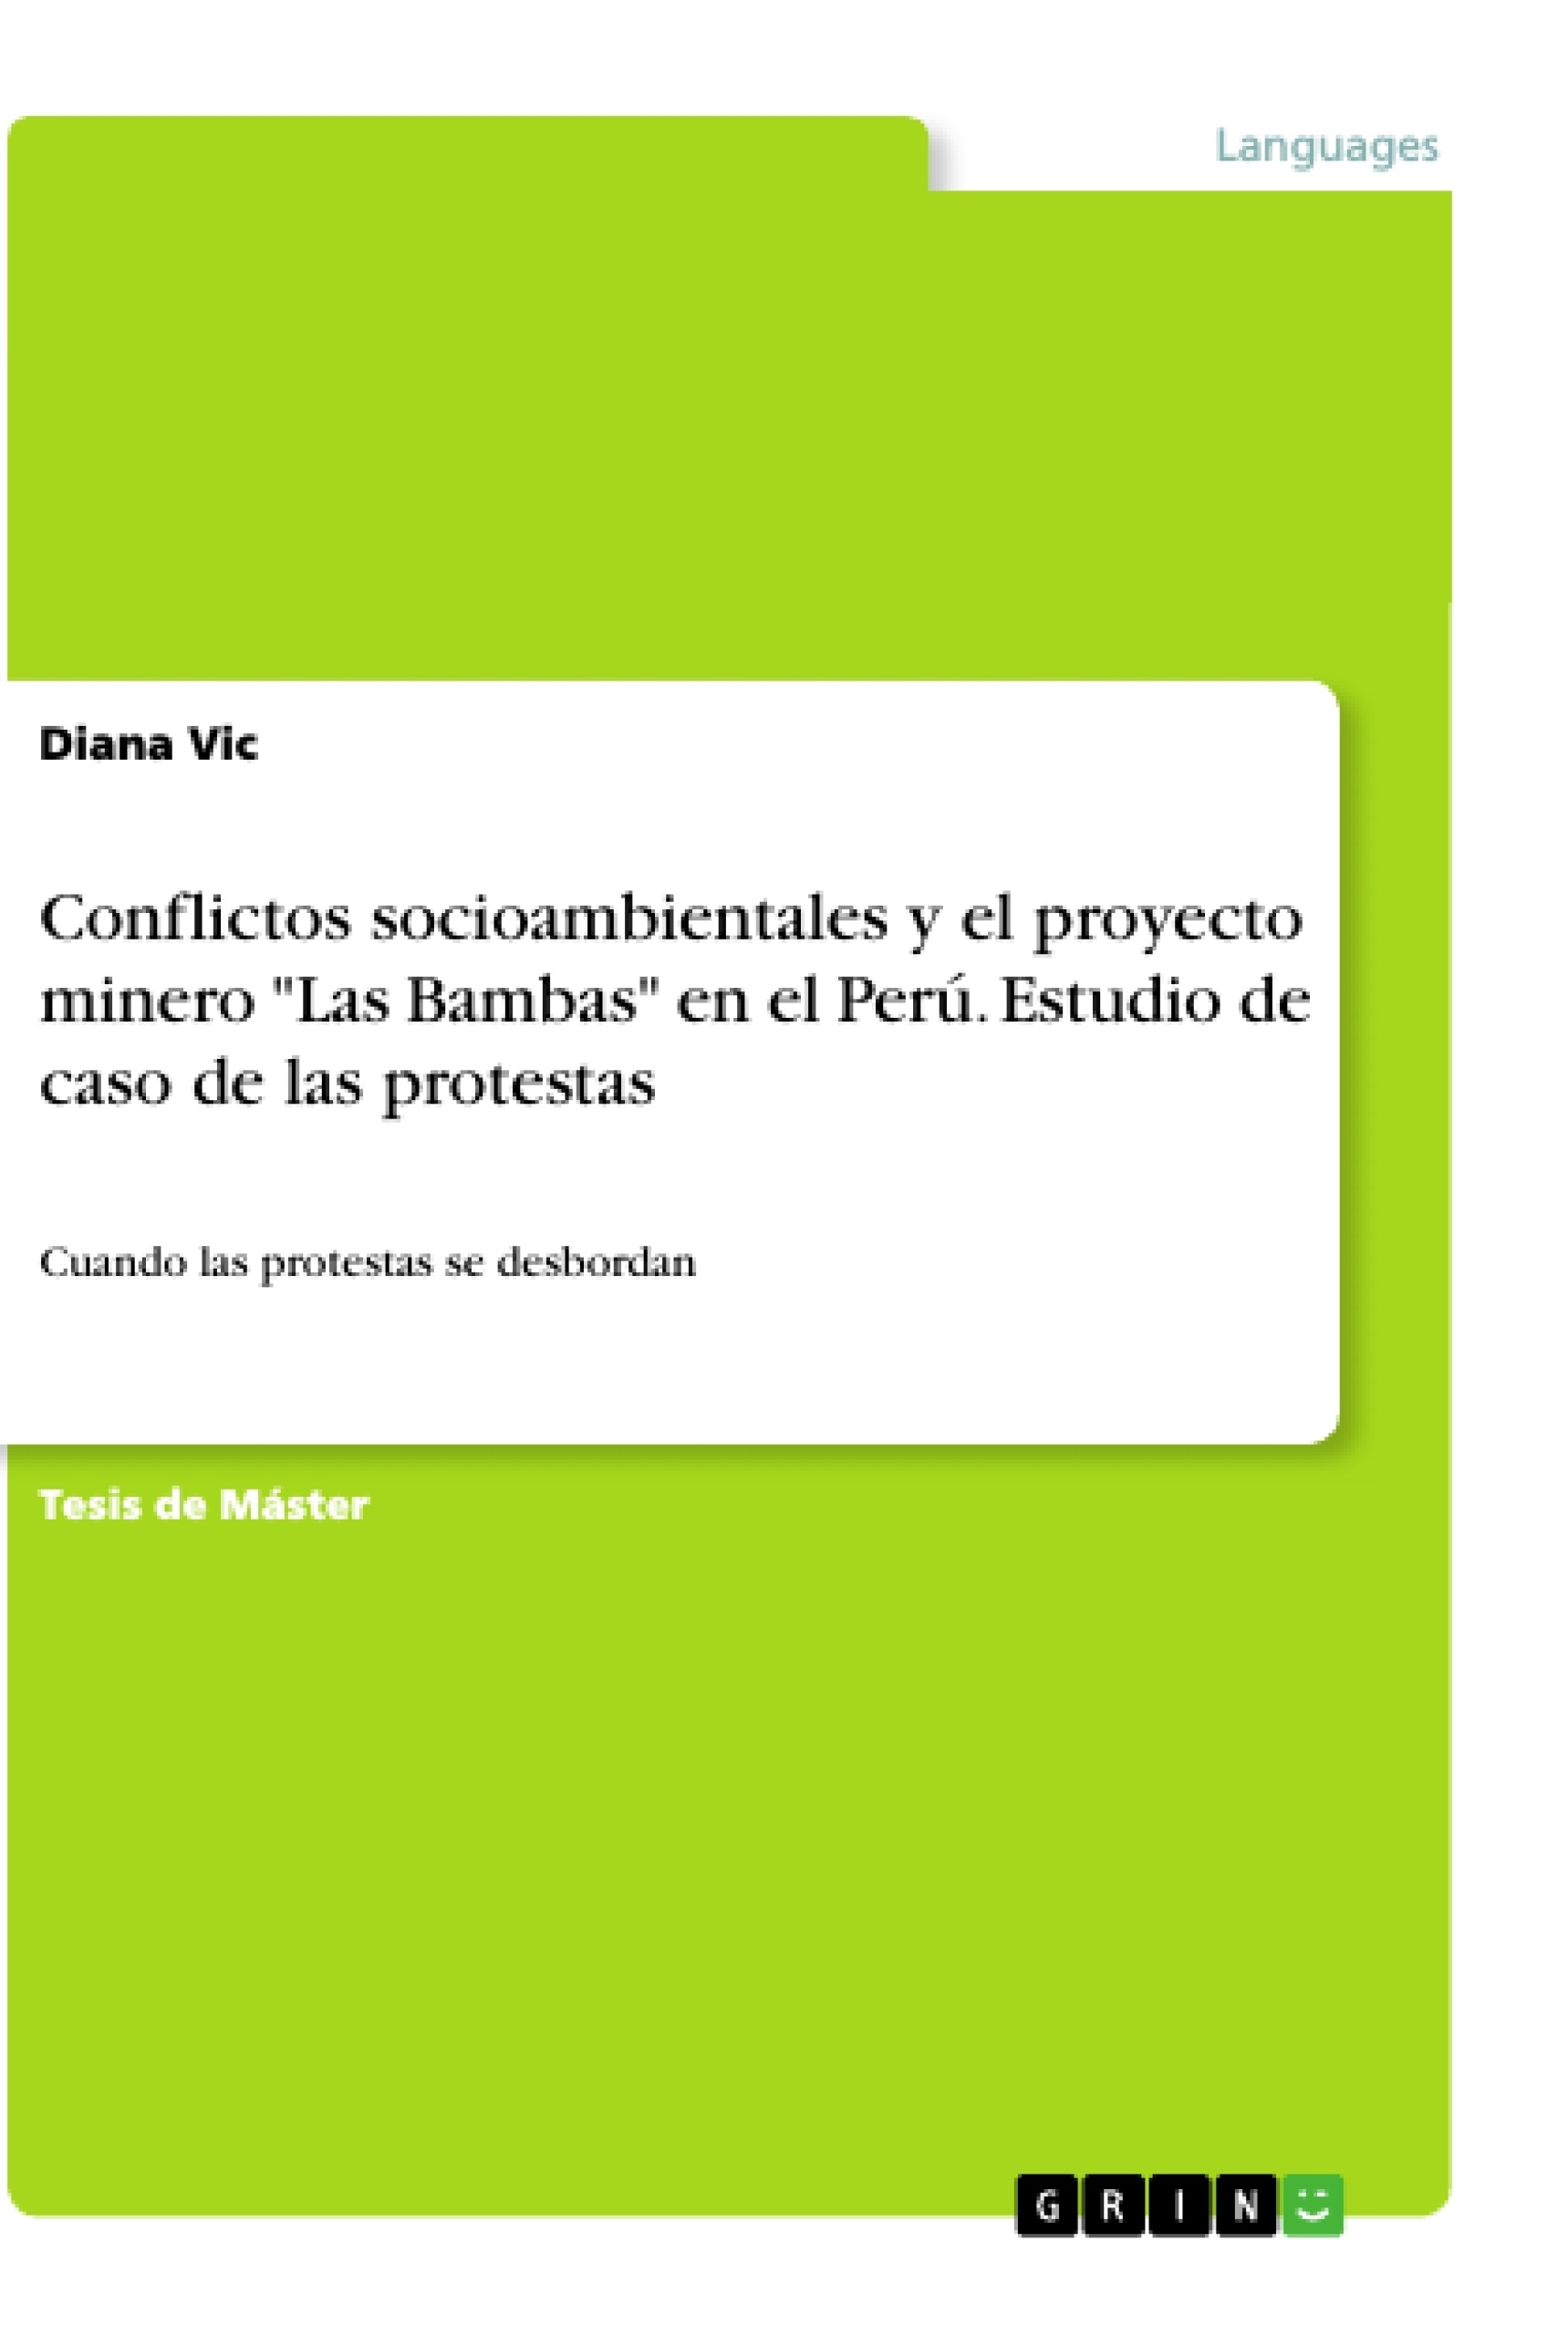 Título: Conflictos socioambientales y el proyecto minero "Las Bambas" en el Perú. Estudio de caso de las protestas